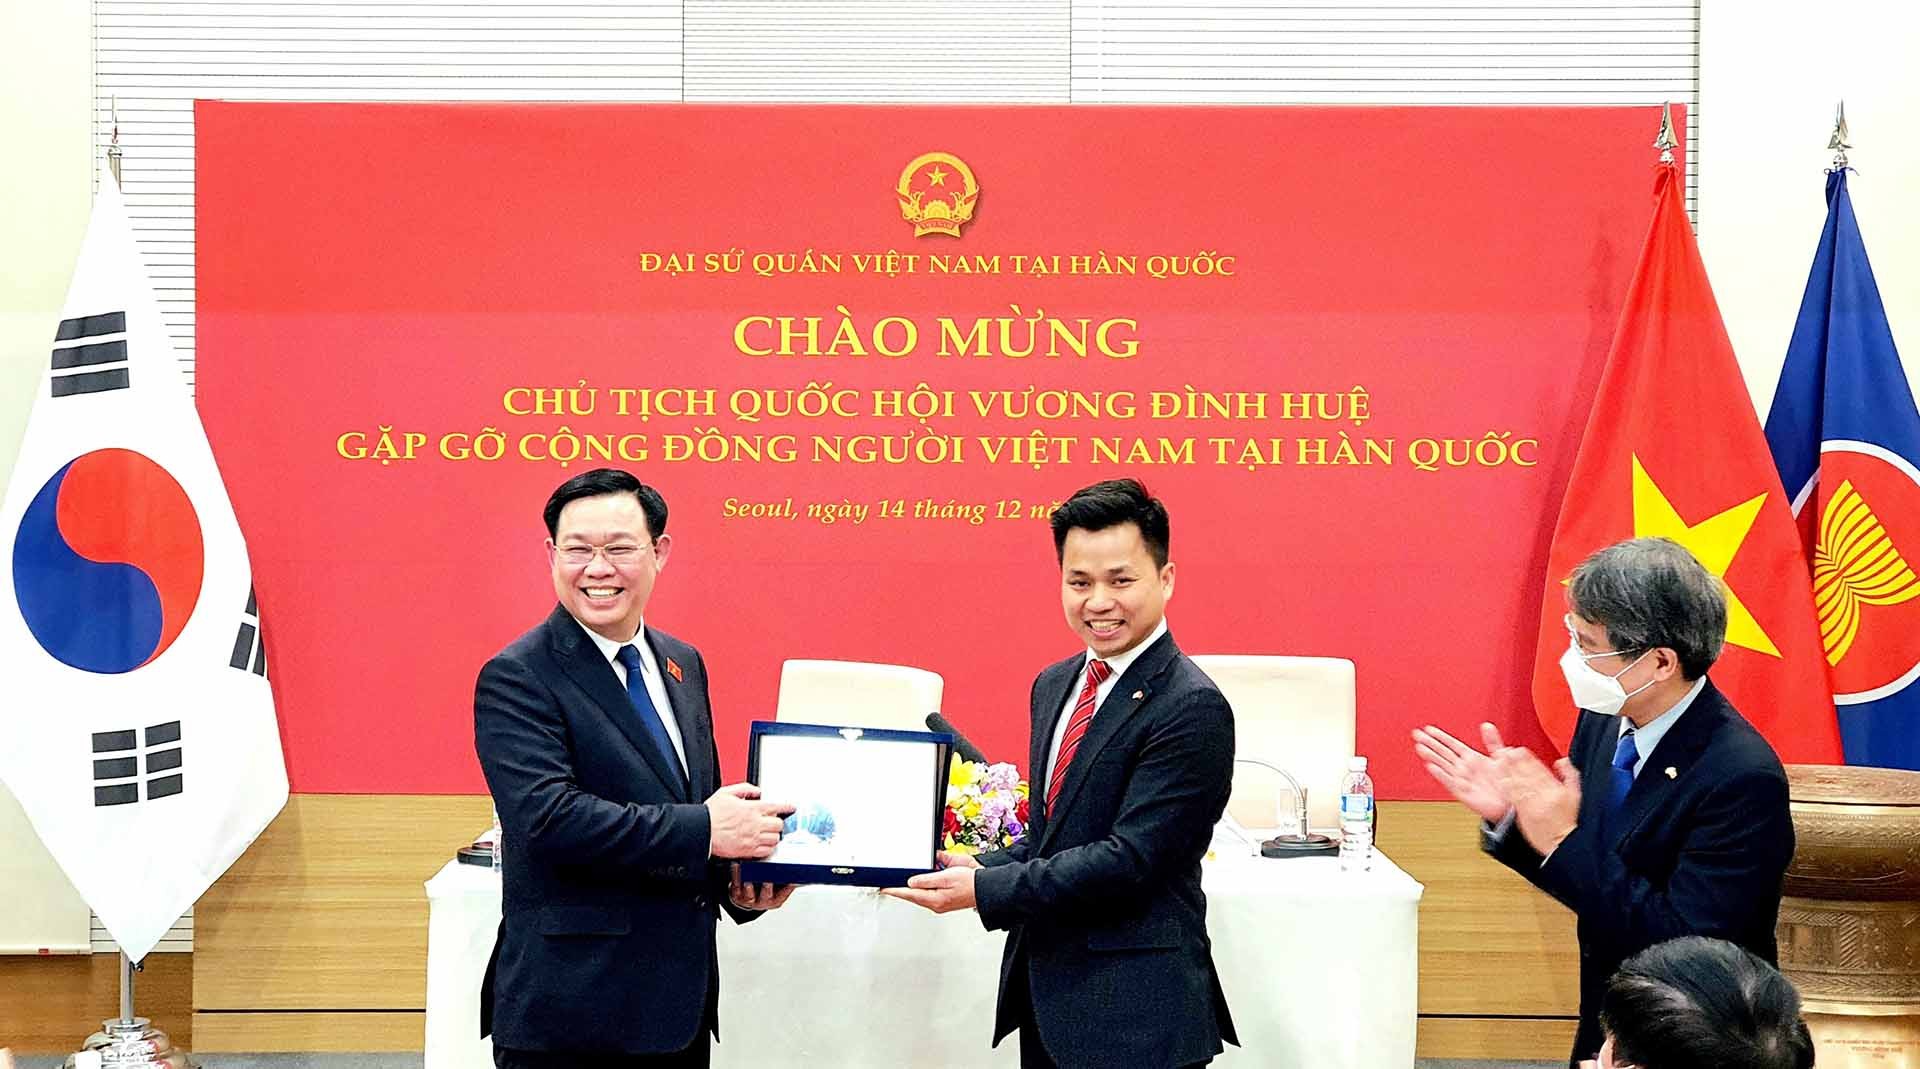 Chủ tịch Quốc hội Vương Đình Huệ và Chủ tịch Hội người Việt Nam tại Hàn Quốc Vũ Đức Lượng trong khuôn khổ chuyến thăm chính thức  Hàn Quốc, tháng 12/2021. (Ảnh: NVCC)